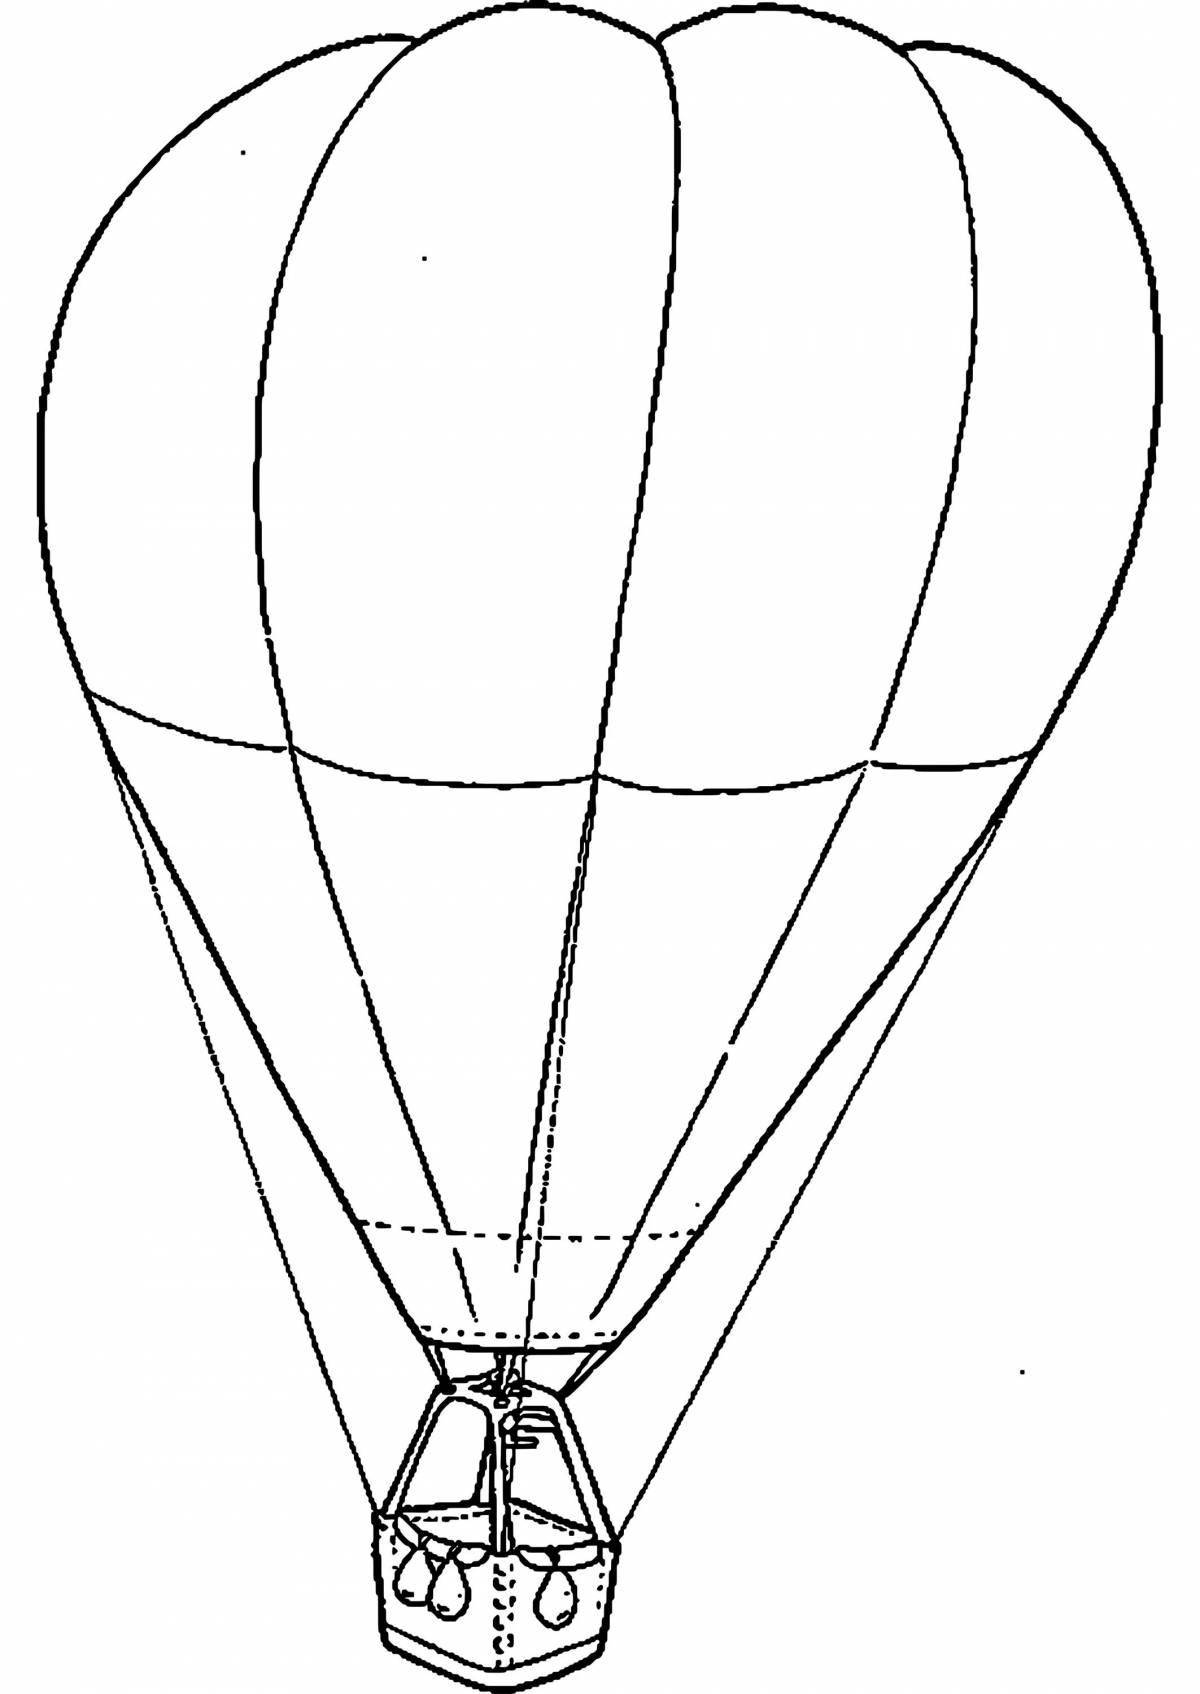 Заманчивый рисунок воздушного шара